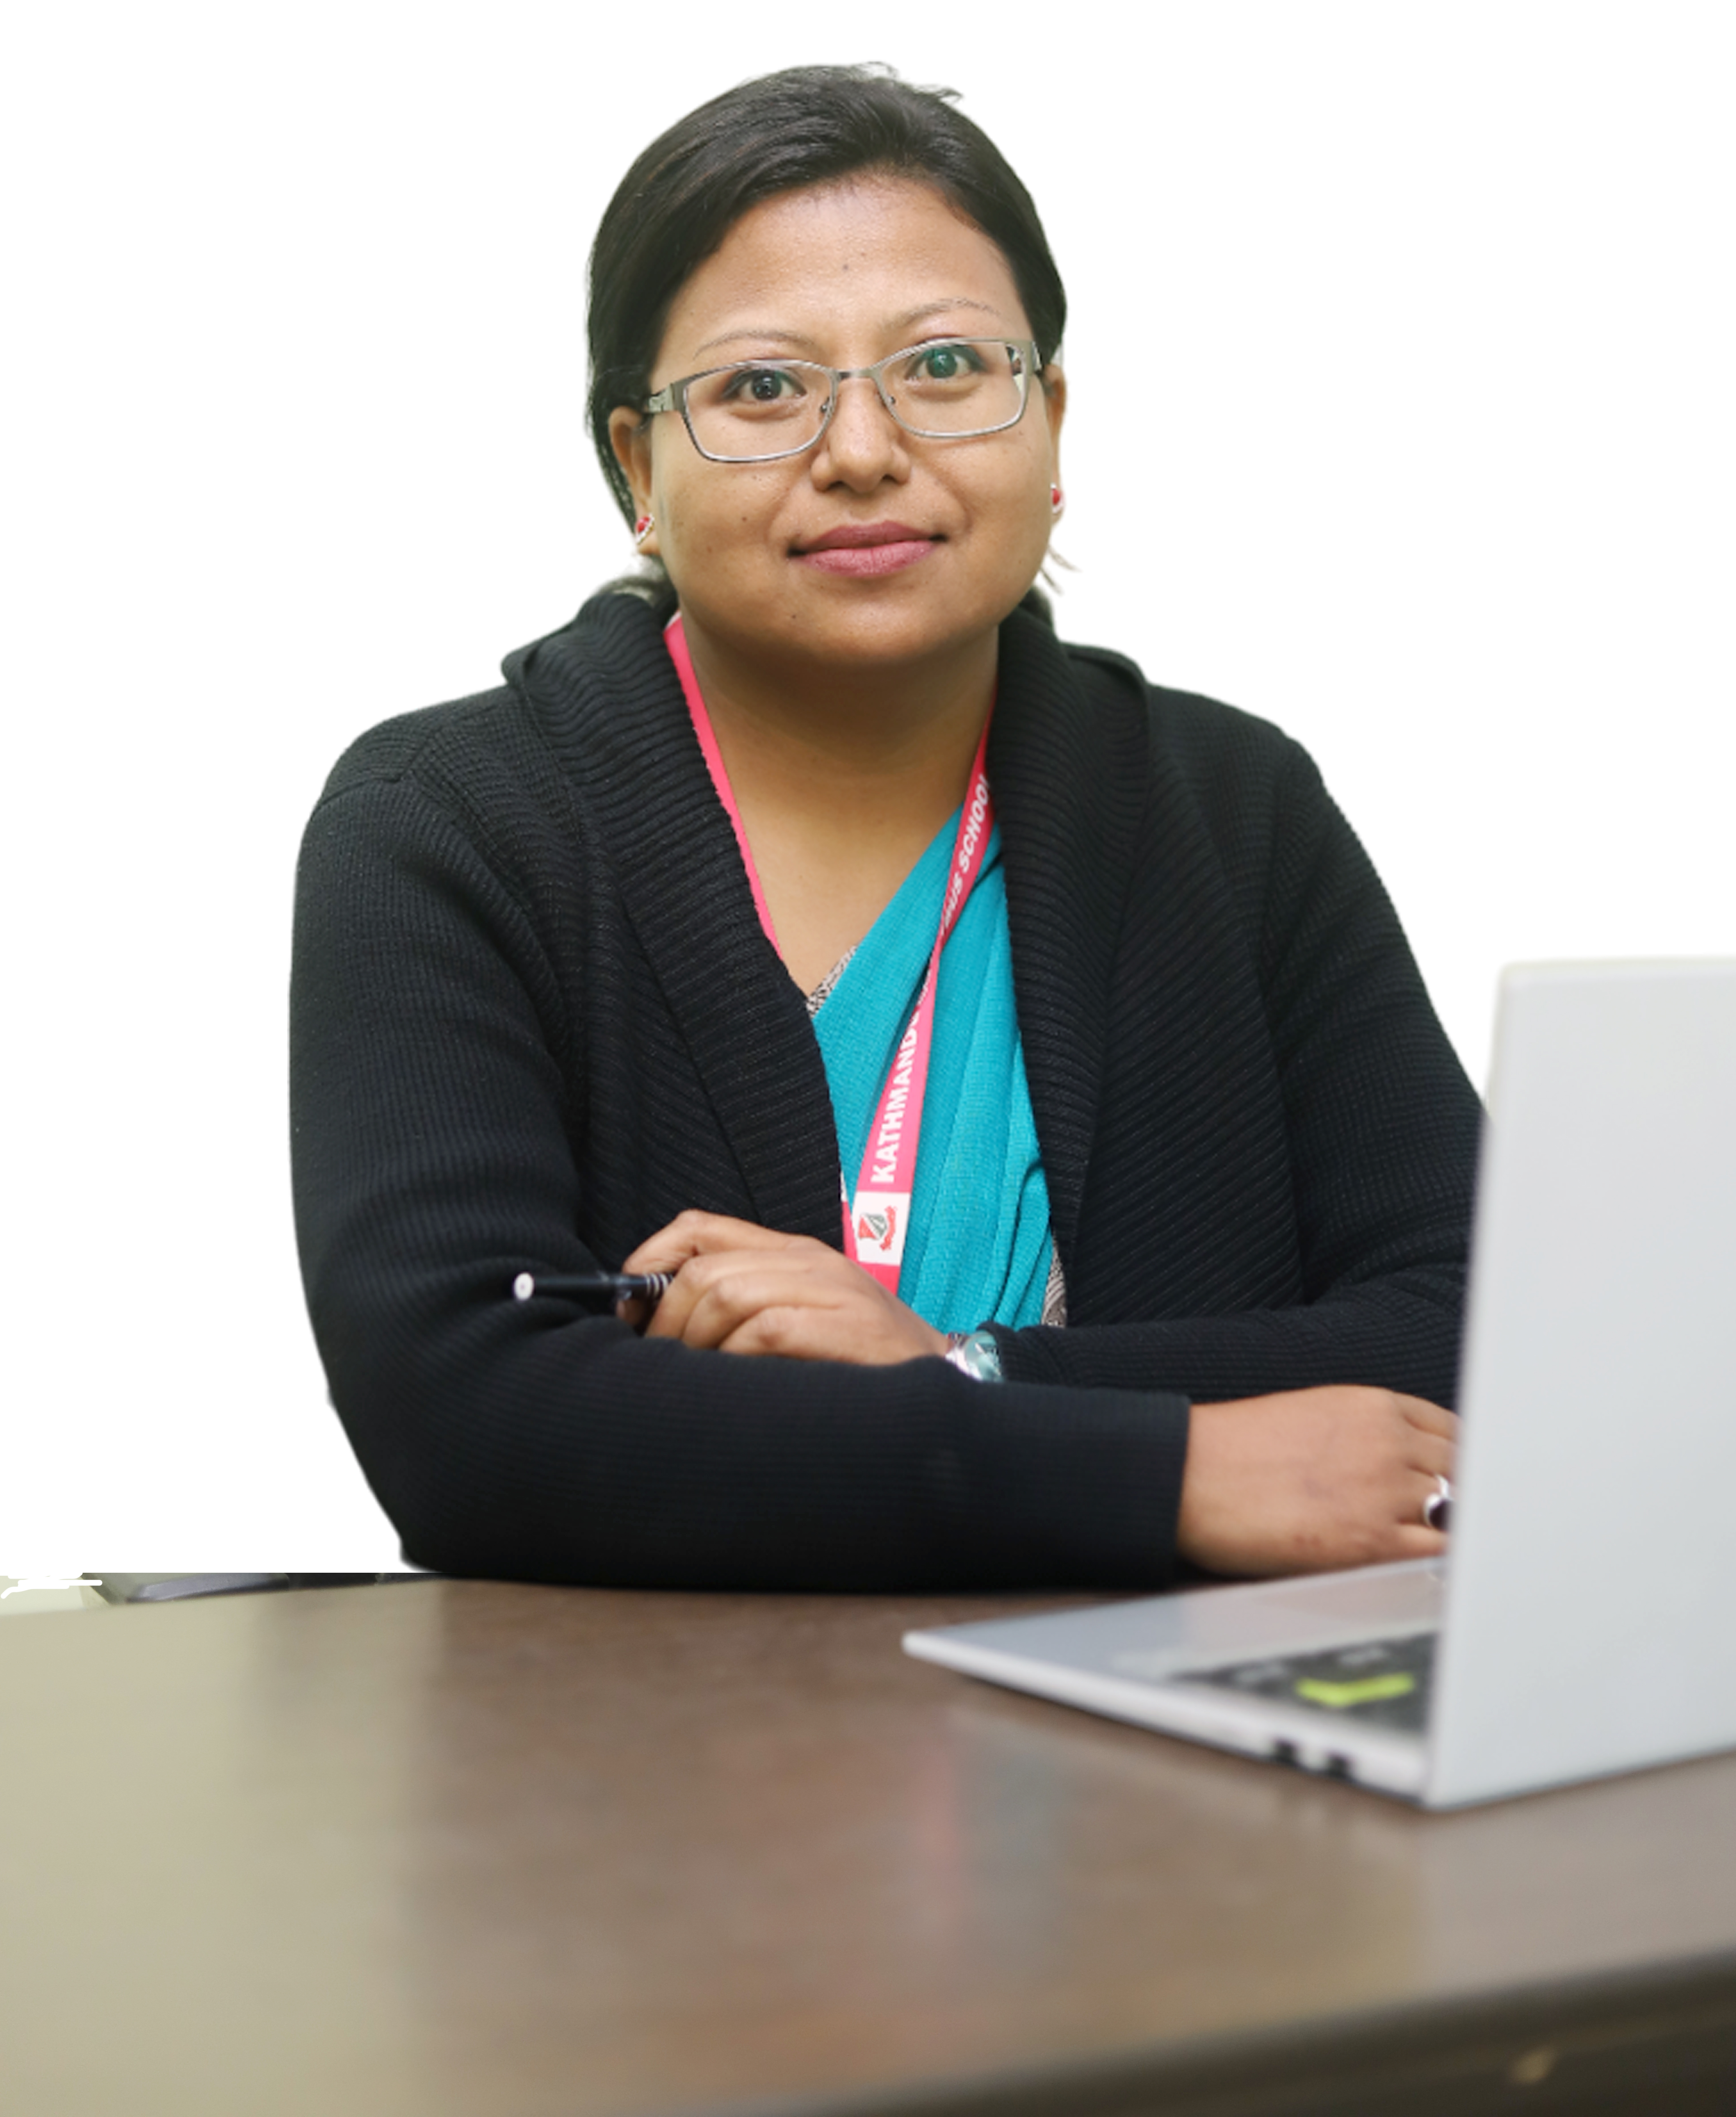 Ms. Subhadra Manandhar